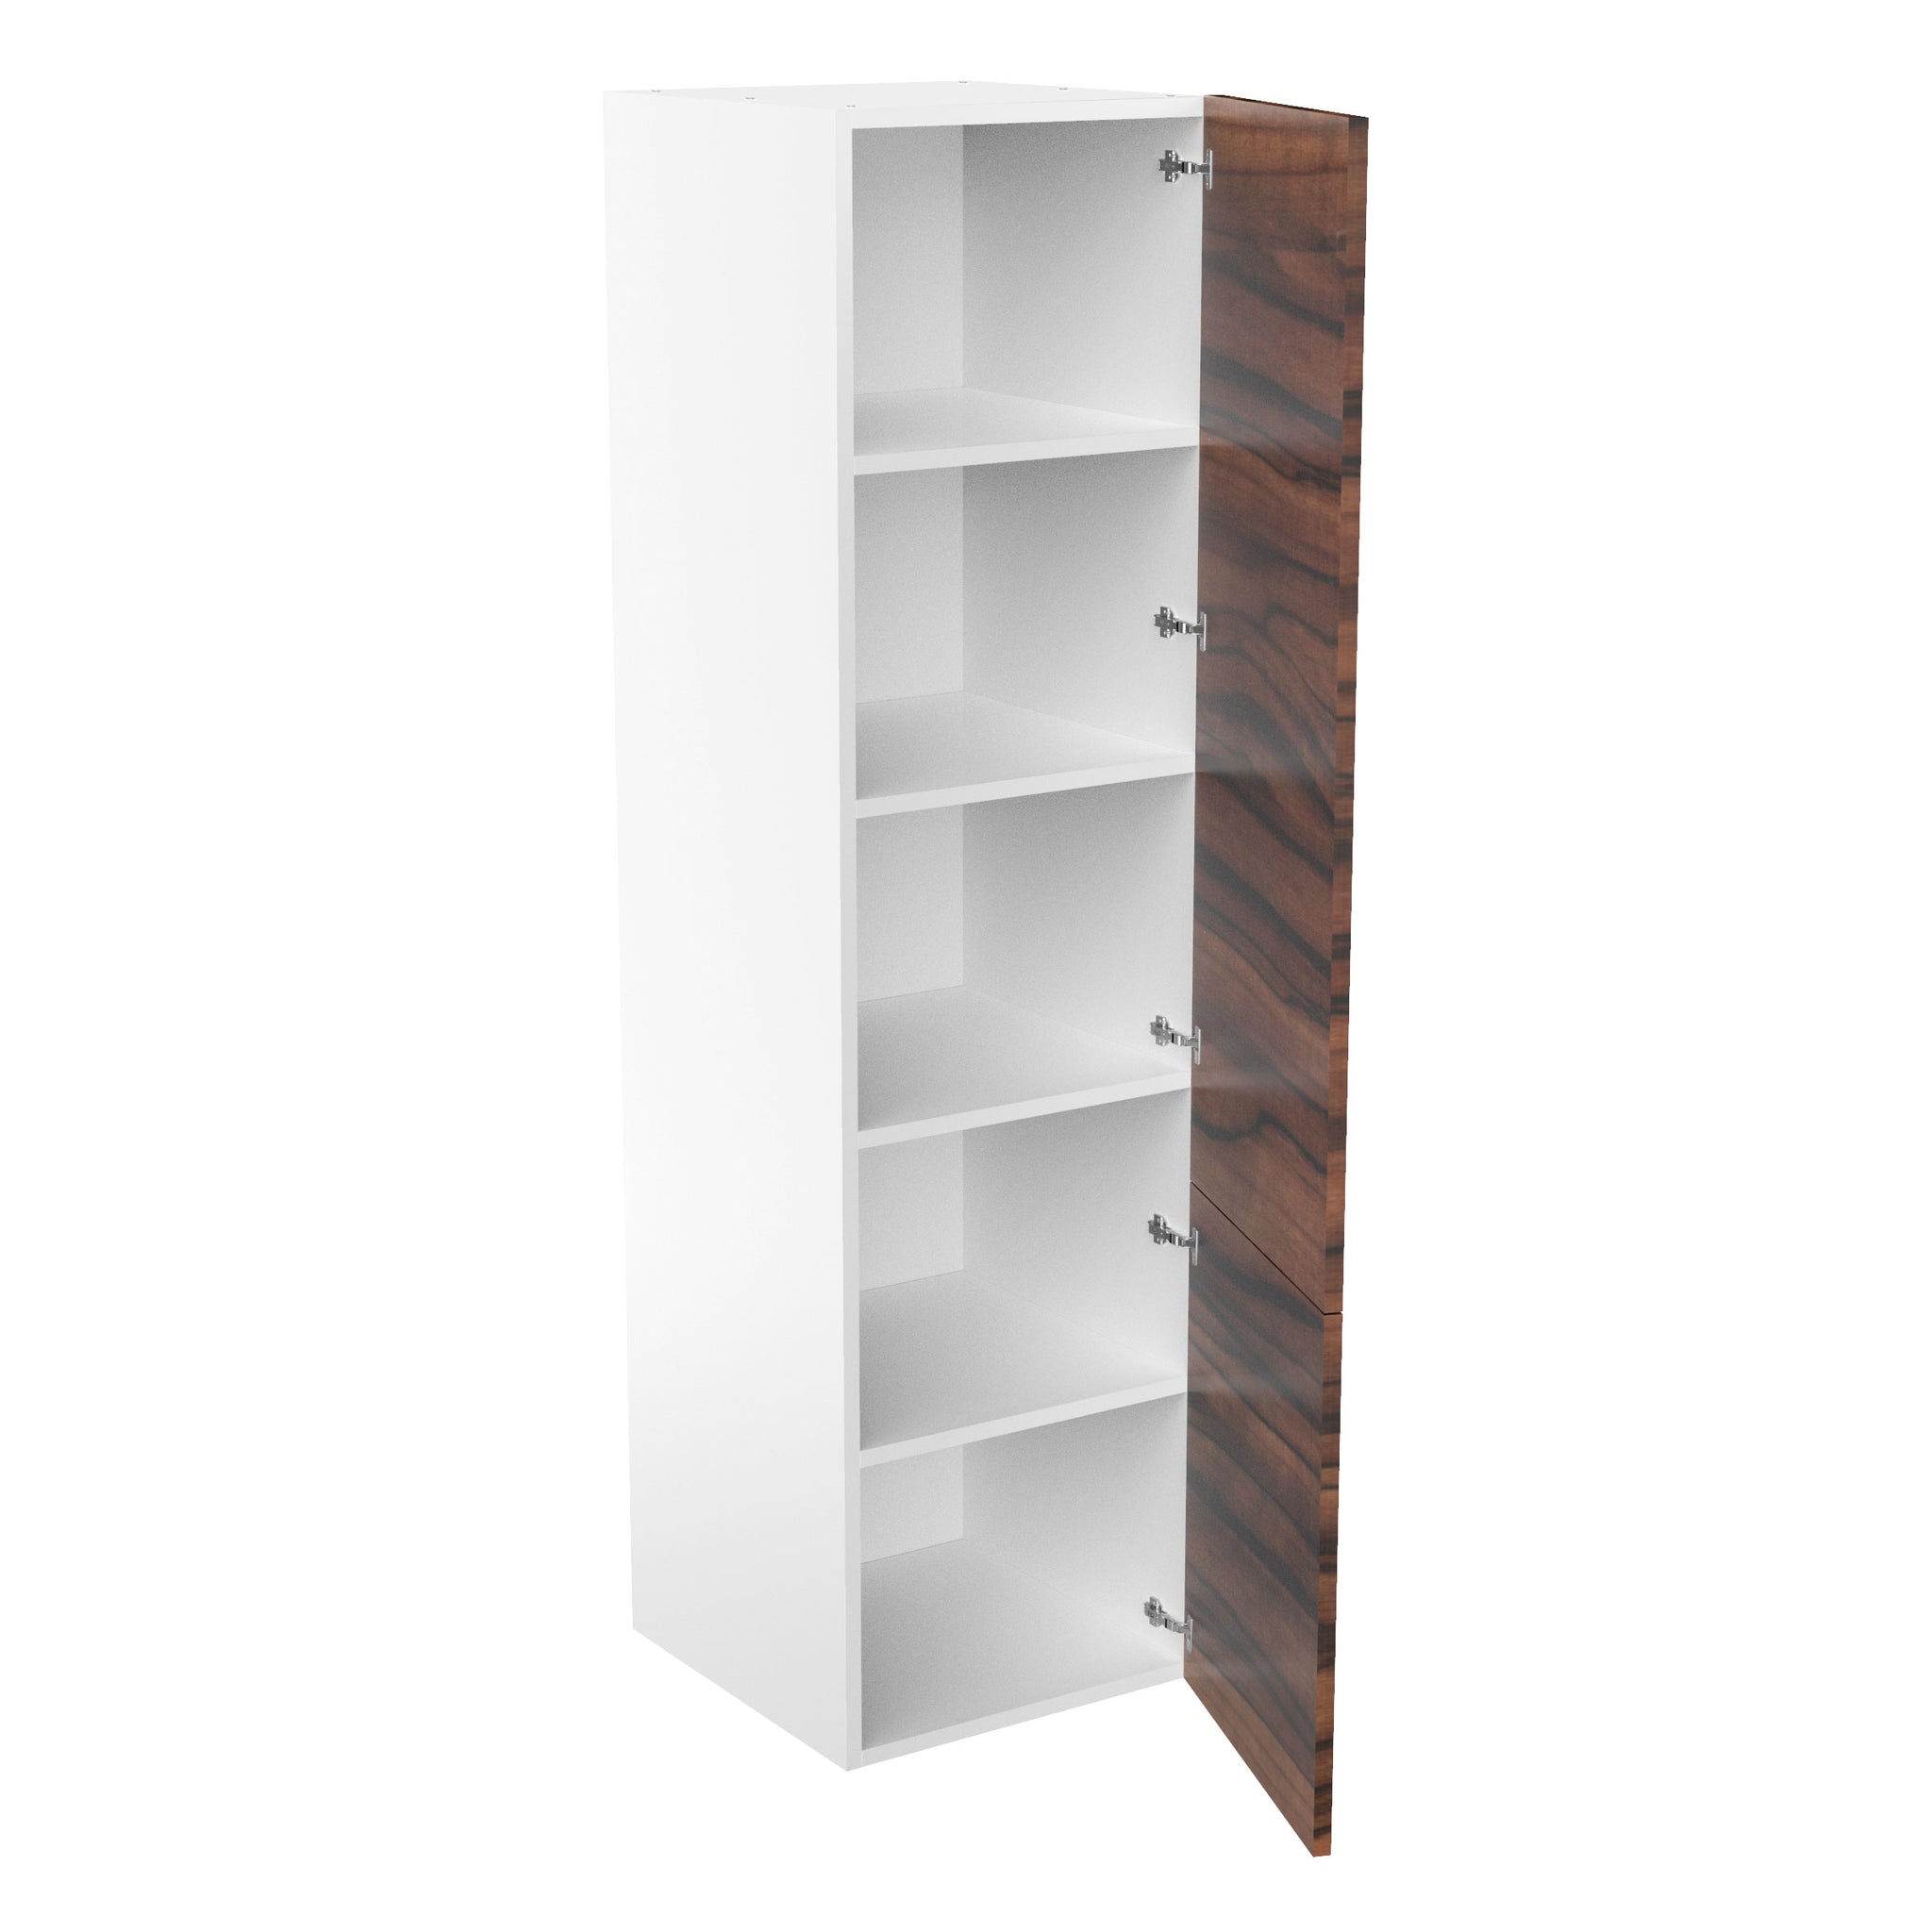 RTA - Ebony UV - Single Door Tall Cabinets | 24"W x 90"H x 23.8"D